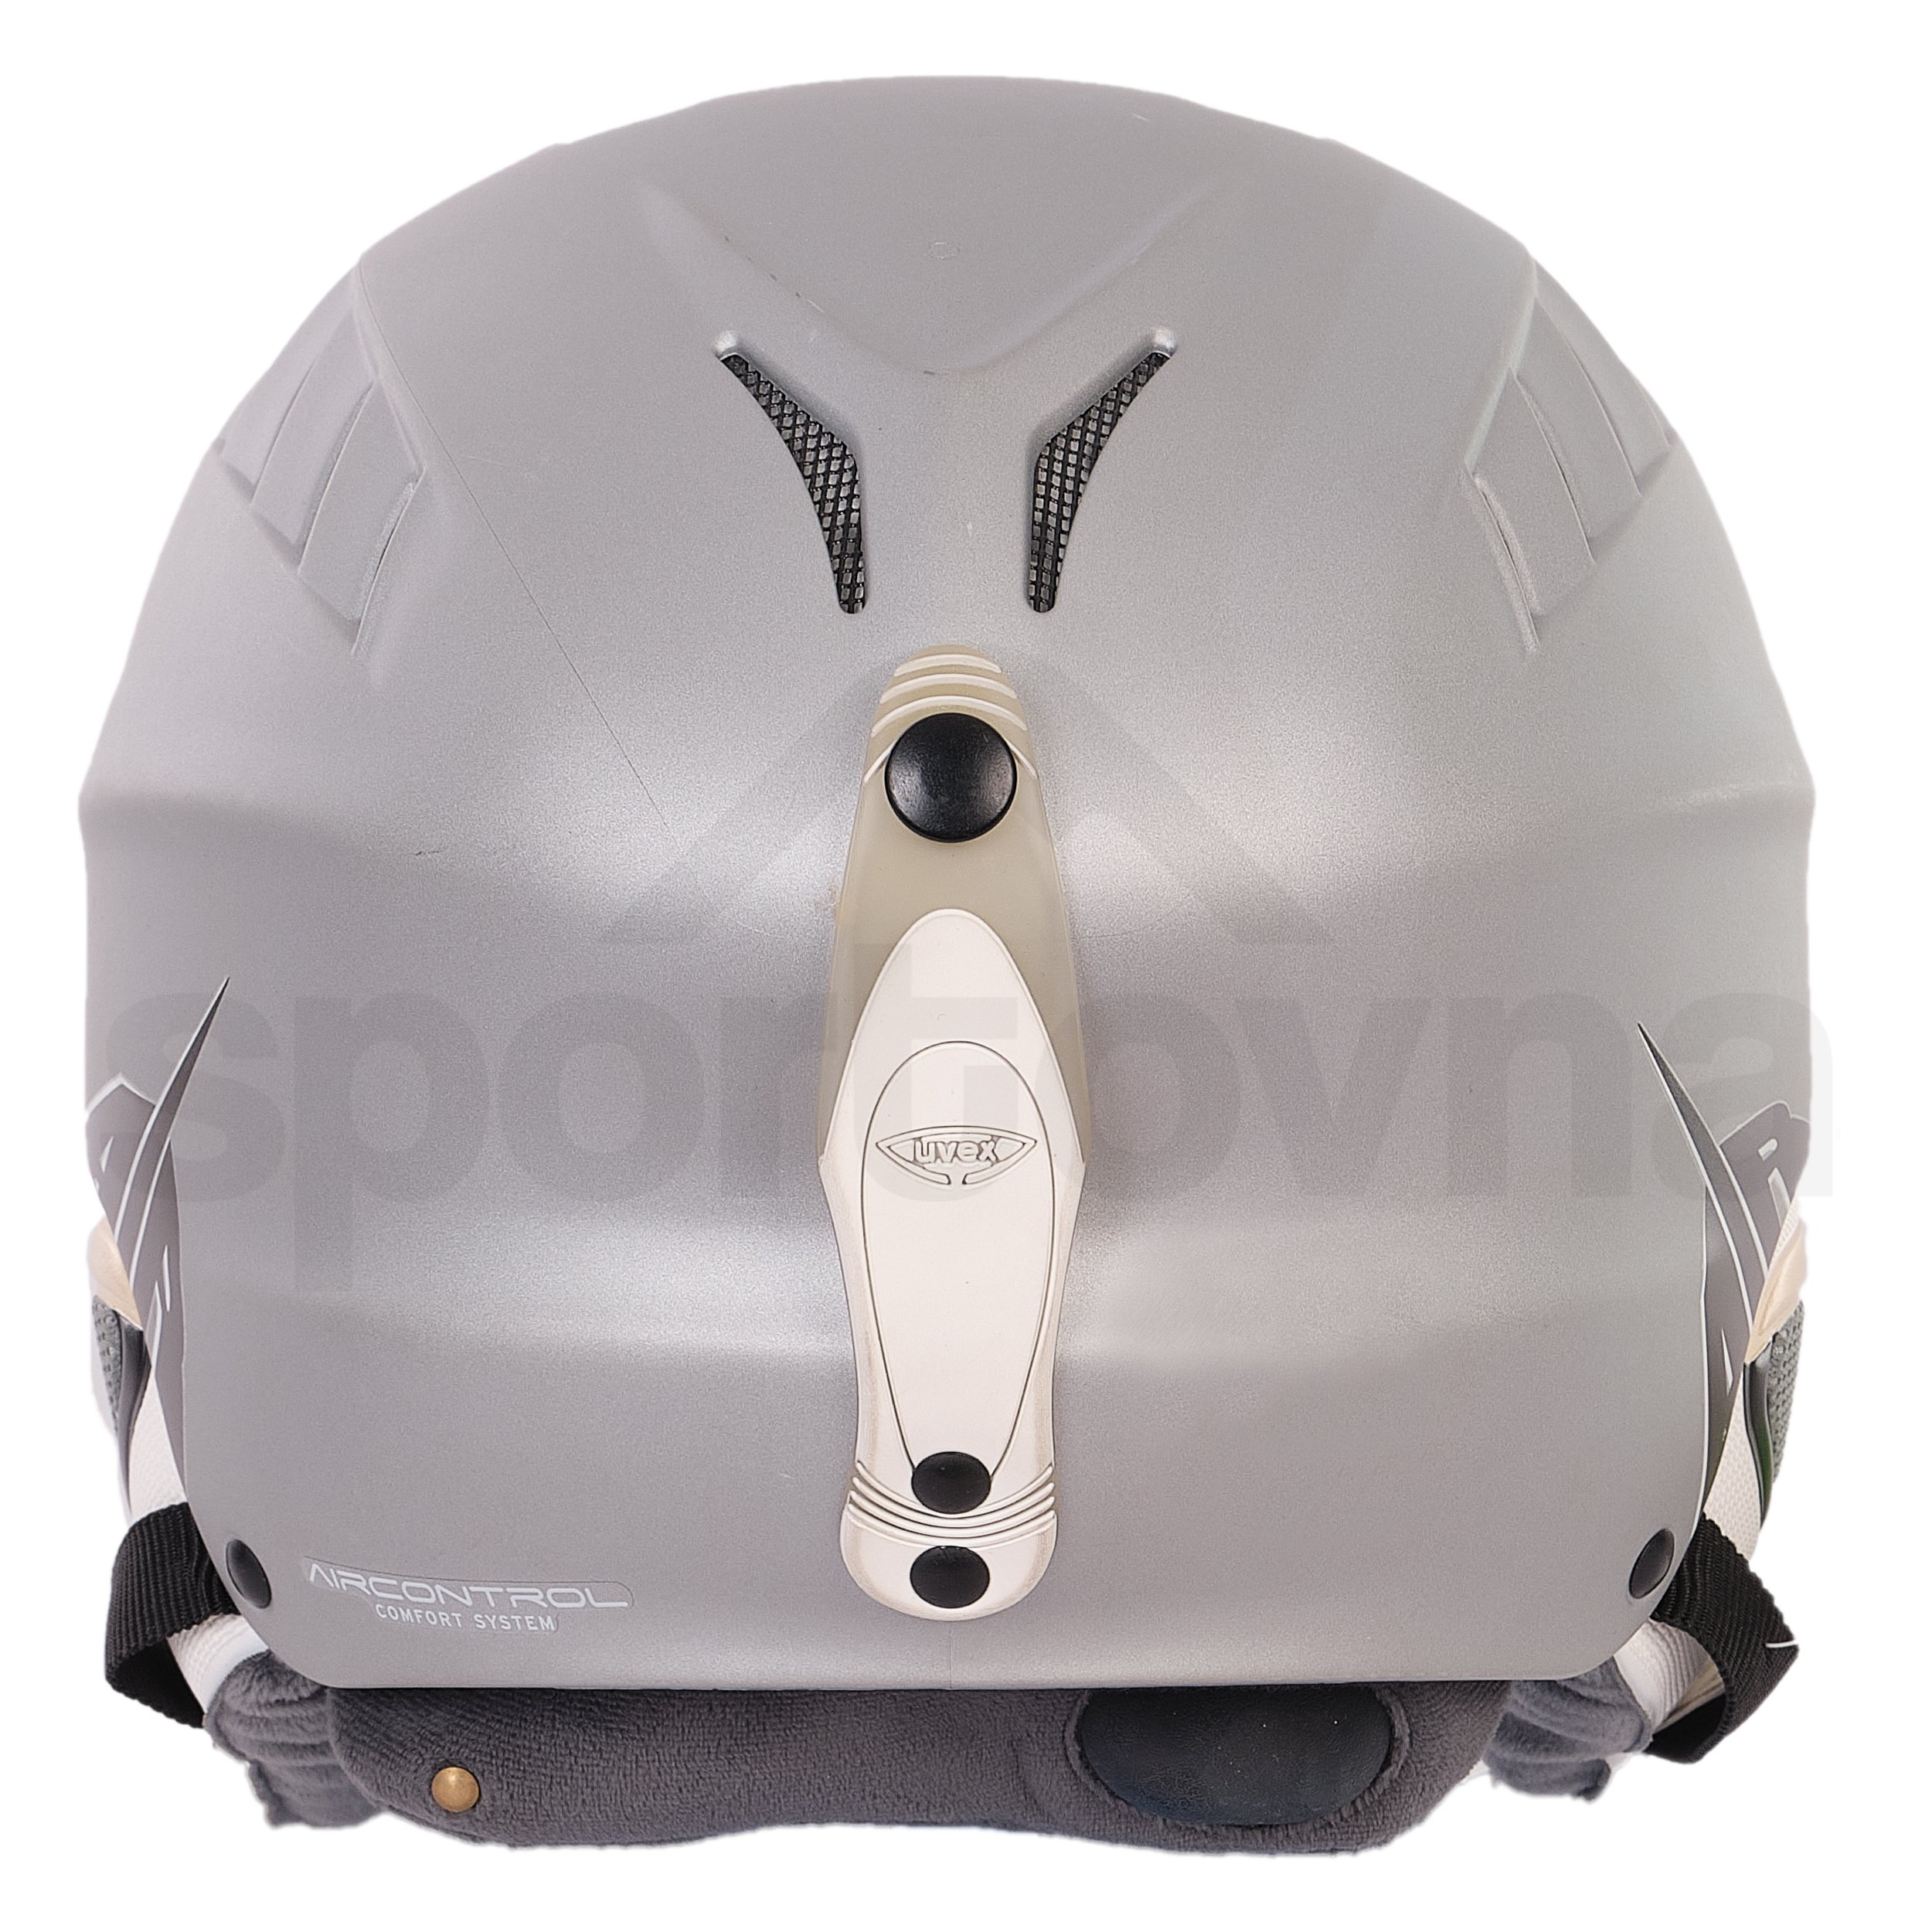 Lyžařská helma Uvex X-Ride Motion - šedá